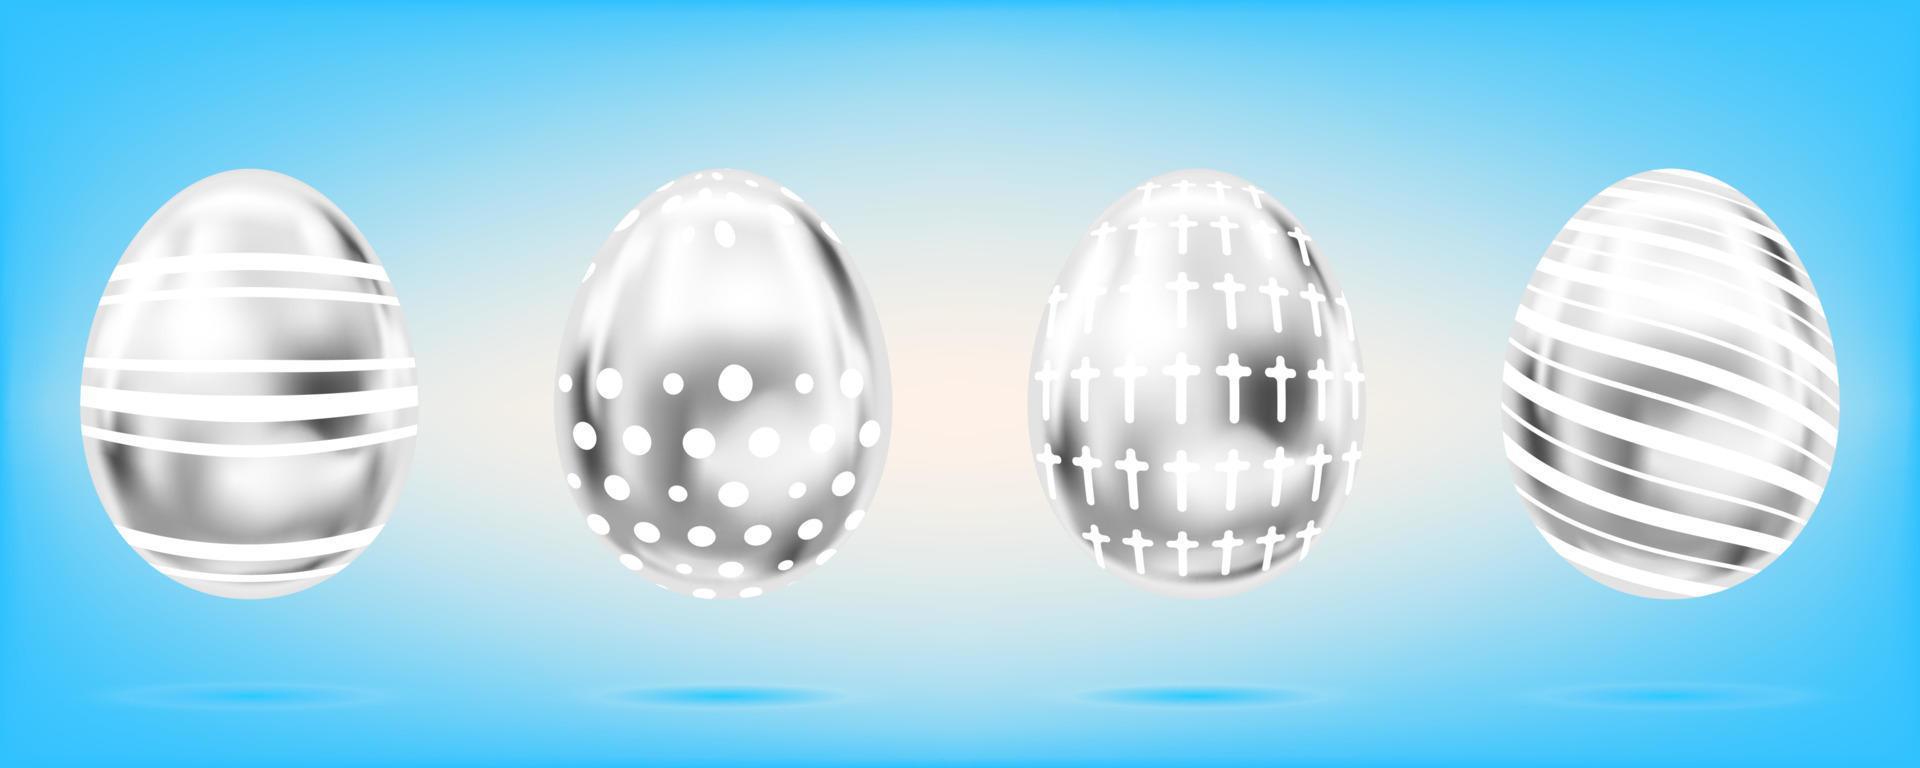 cuatro huevos de plata sobre el fondo azul cielo. objetos aislados para pascua. cruz, puntos y rayas adornados vector